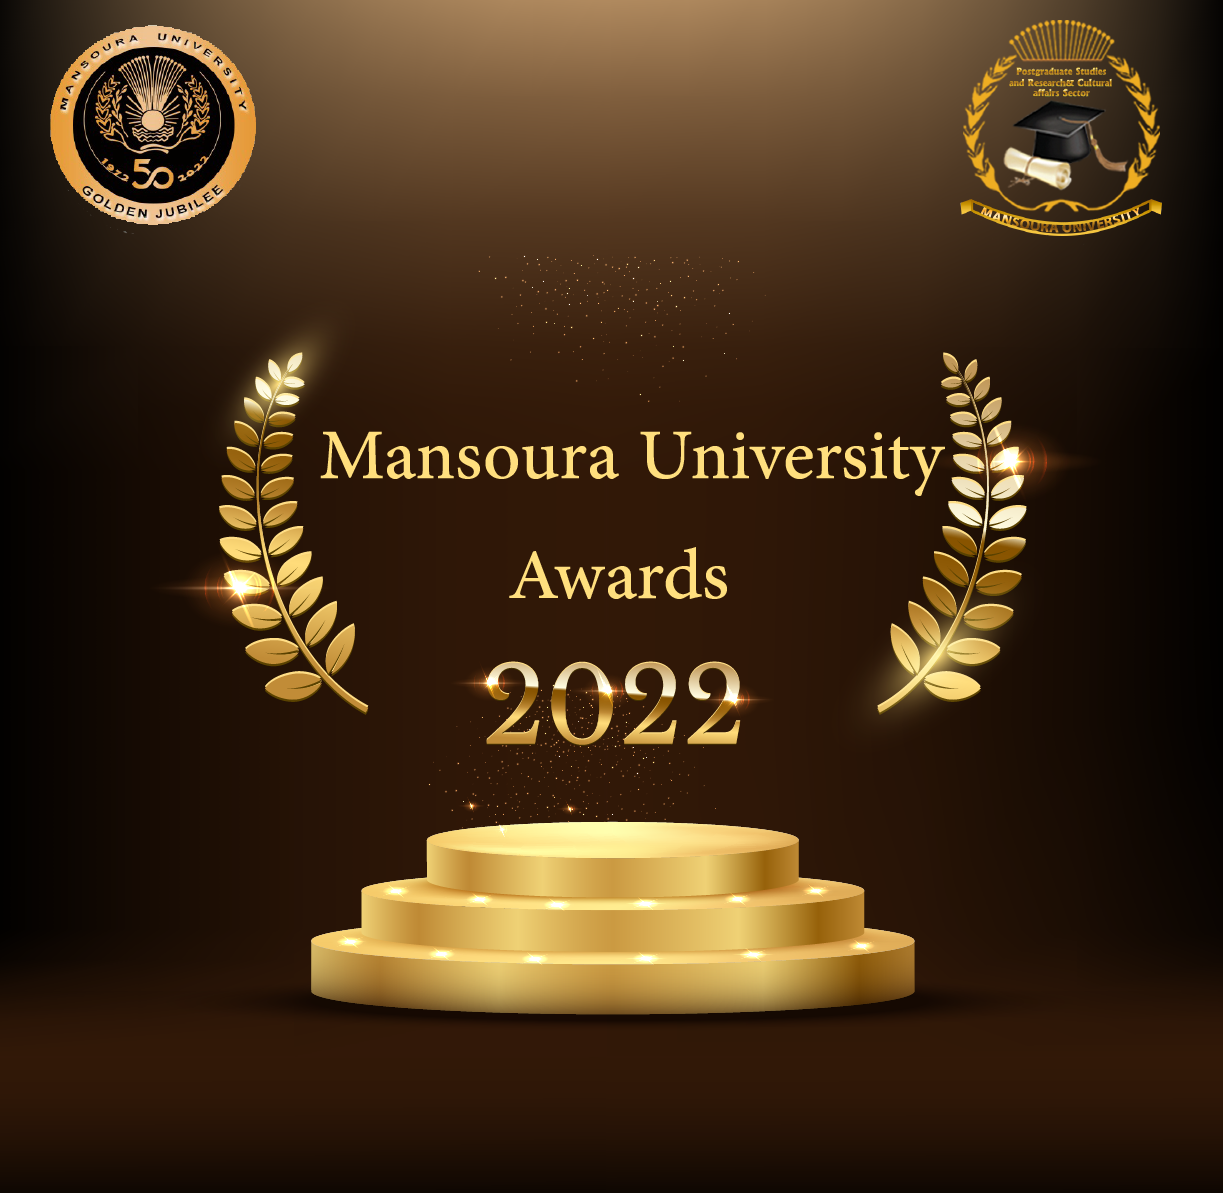 Mansoura University Awards 2022